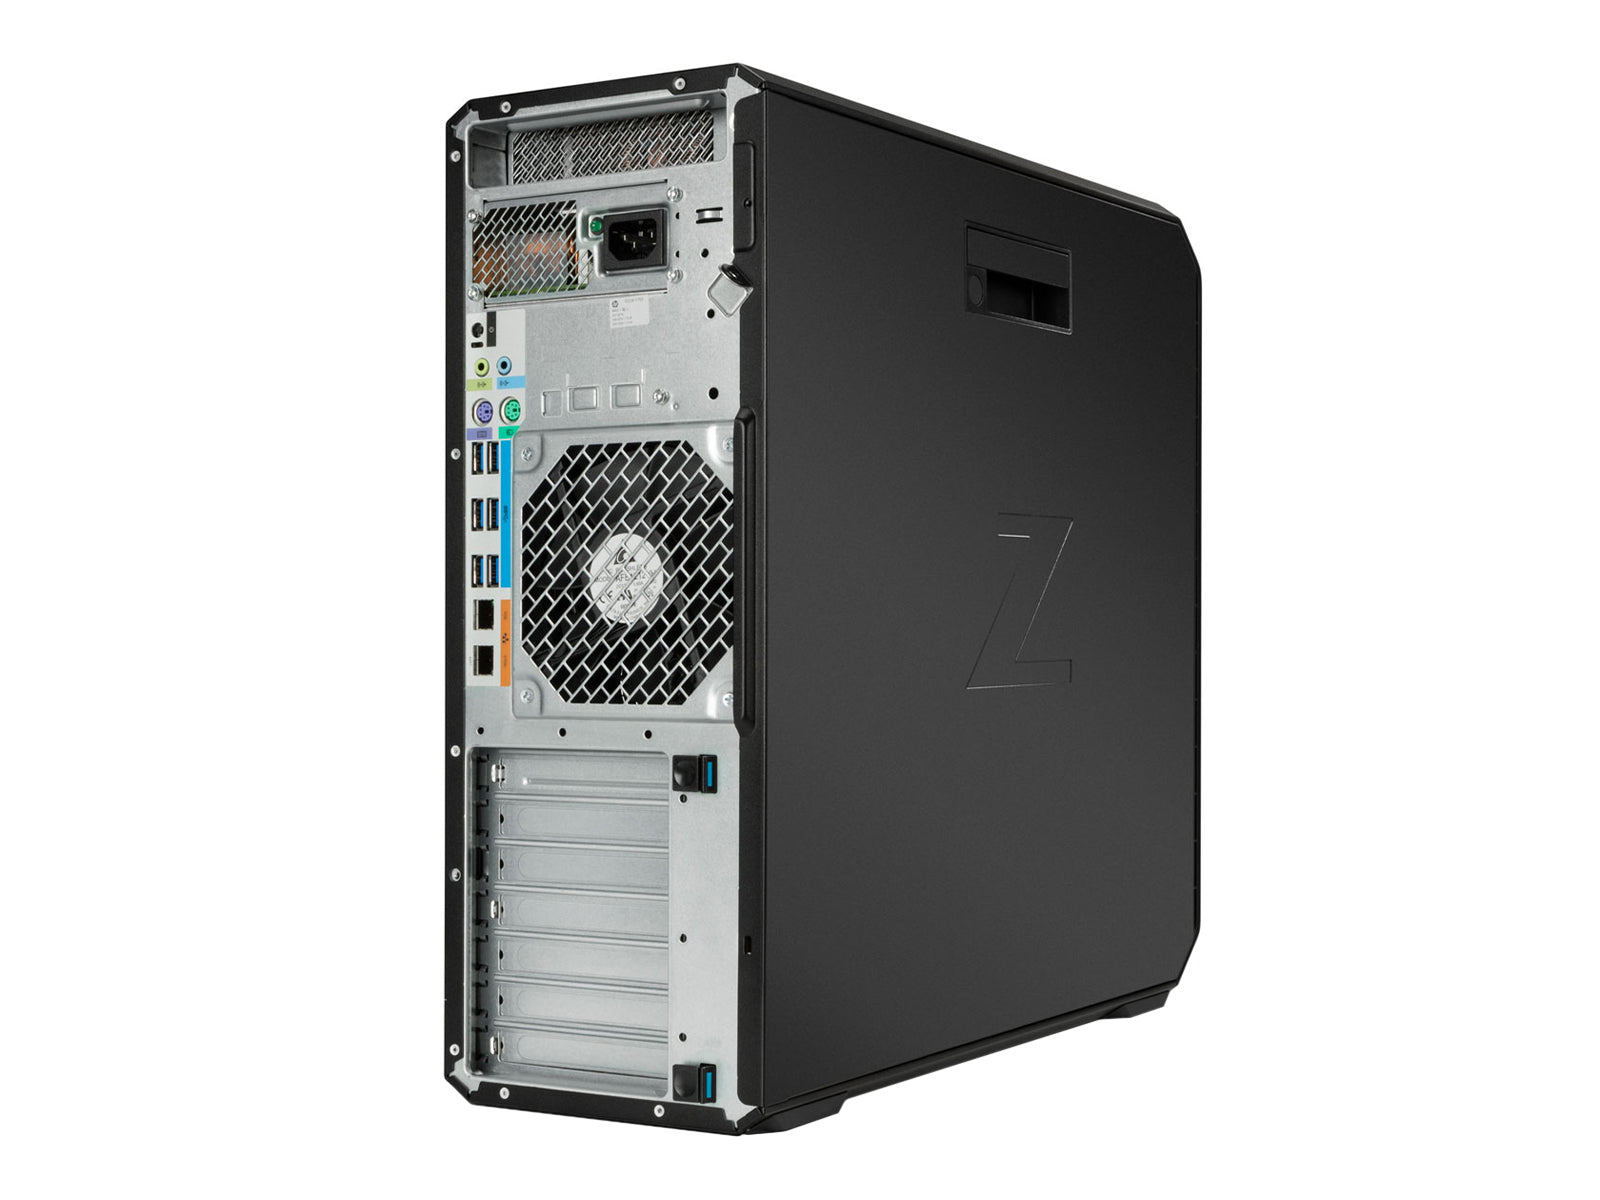 HP Z6 G4 | Intel Xeon Platinum 8173M | 64GB DDR4 | 512GB NVMe M.2 SSD | MXRT 7600 | Win10